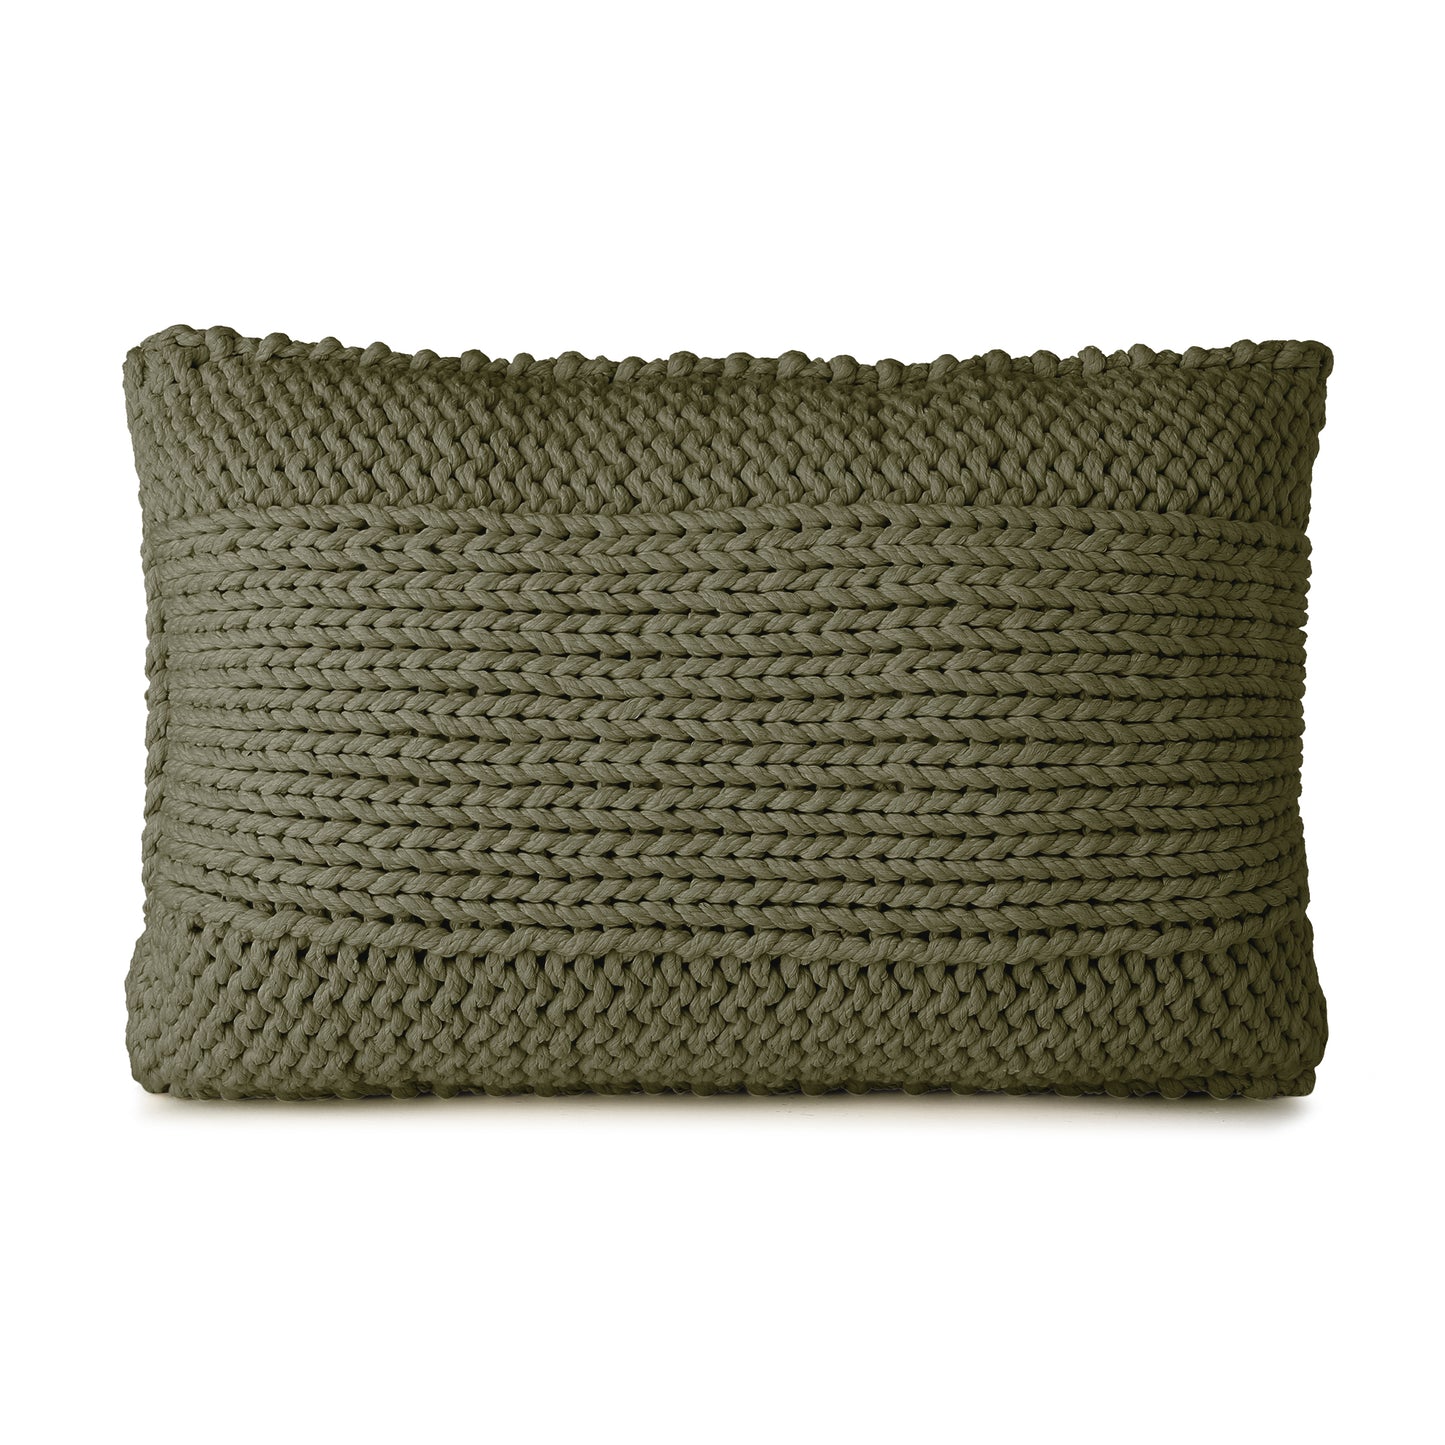 Almofada em tricô artesanal Verde, frente e verso, com fio 100% algodão. Fechamento com zíper, possibilitando a remoção da capa para lavagem. Dimensões: Altura - 40cm; Largura - 60cm. 